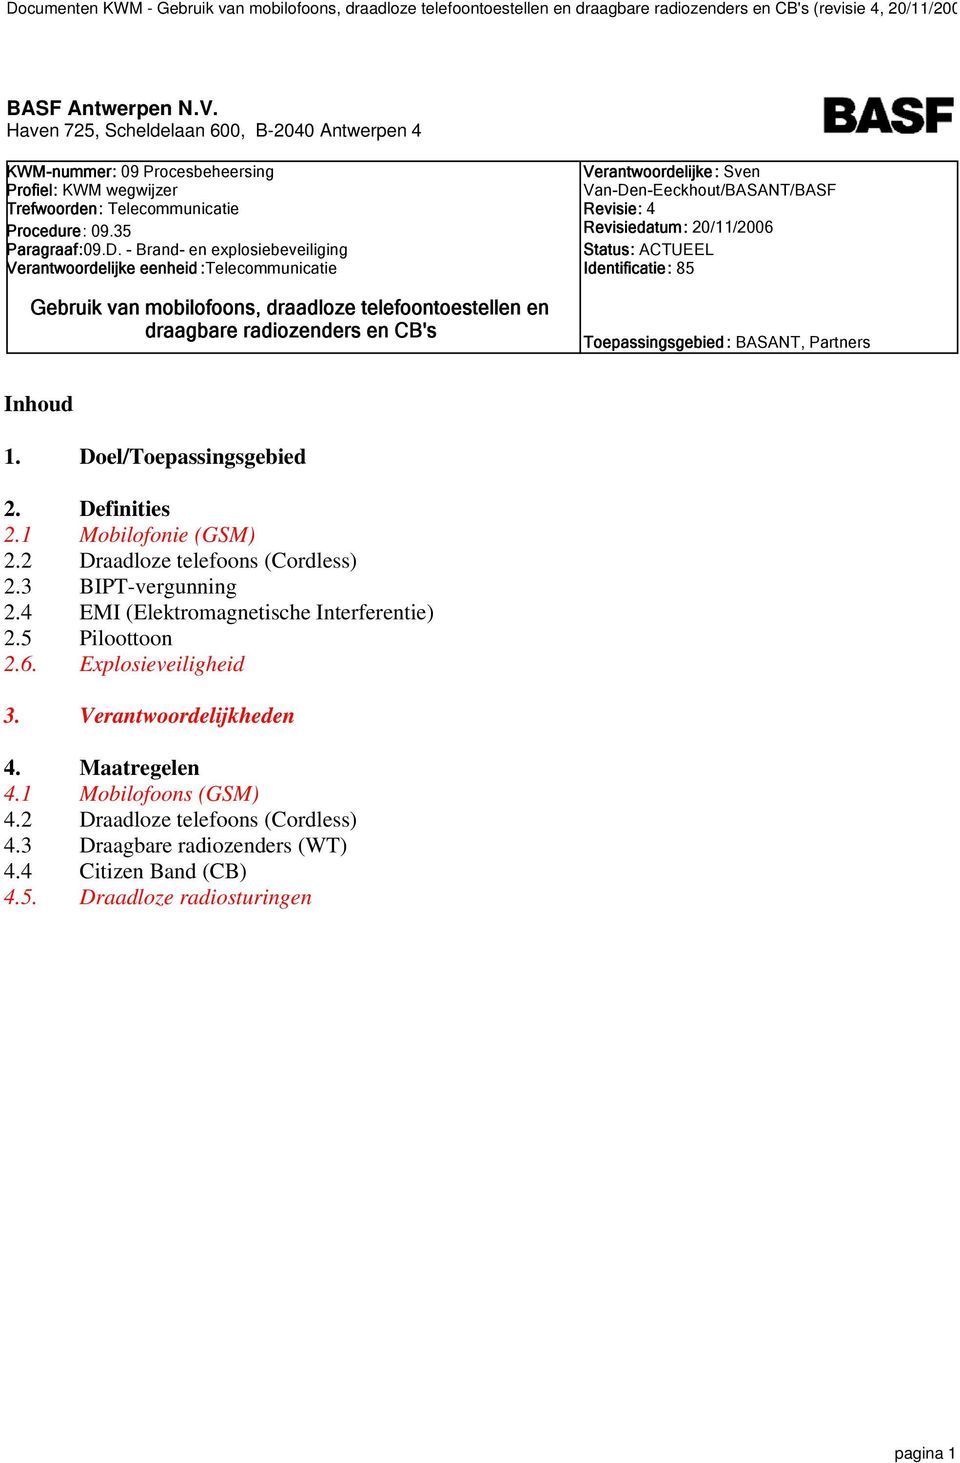 Van-Den-Eeckhout/BASANT/BASF Revisie: 4 Revisiedatum: 20/11/2006 Status: ACTUEEL Identificatie: 85 Toepassingsgebied : BASANT, Partners Inhoud 1. Doel/Toepassingsgebied 2. Definities 2.